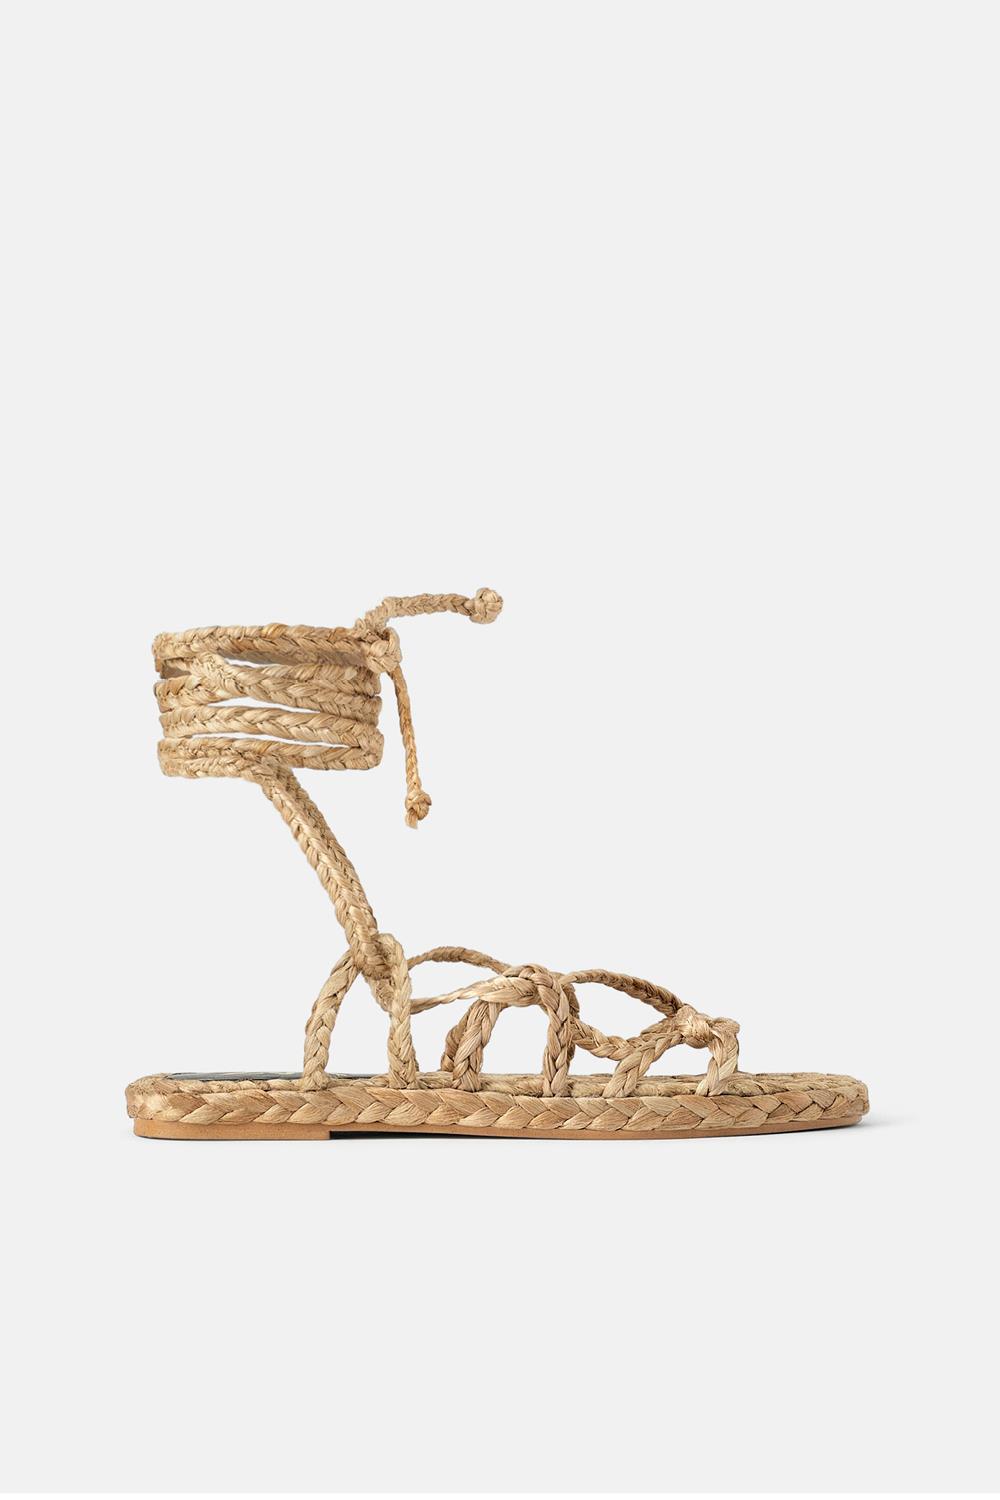 sandalias de moda rebajas 2019 zara 25,99€